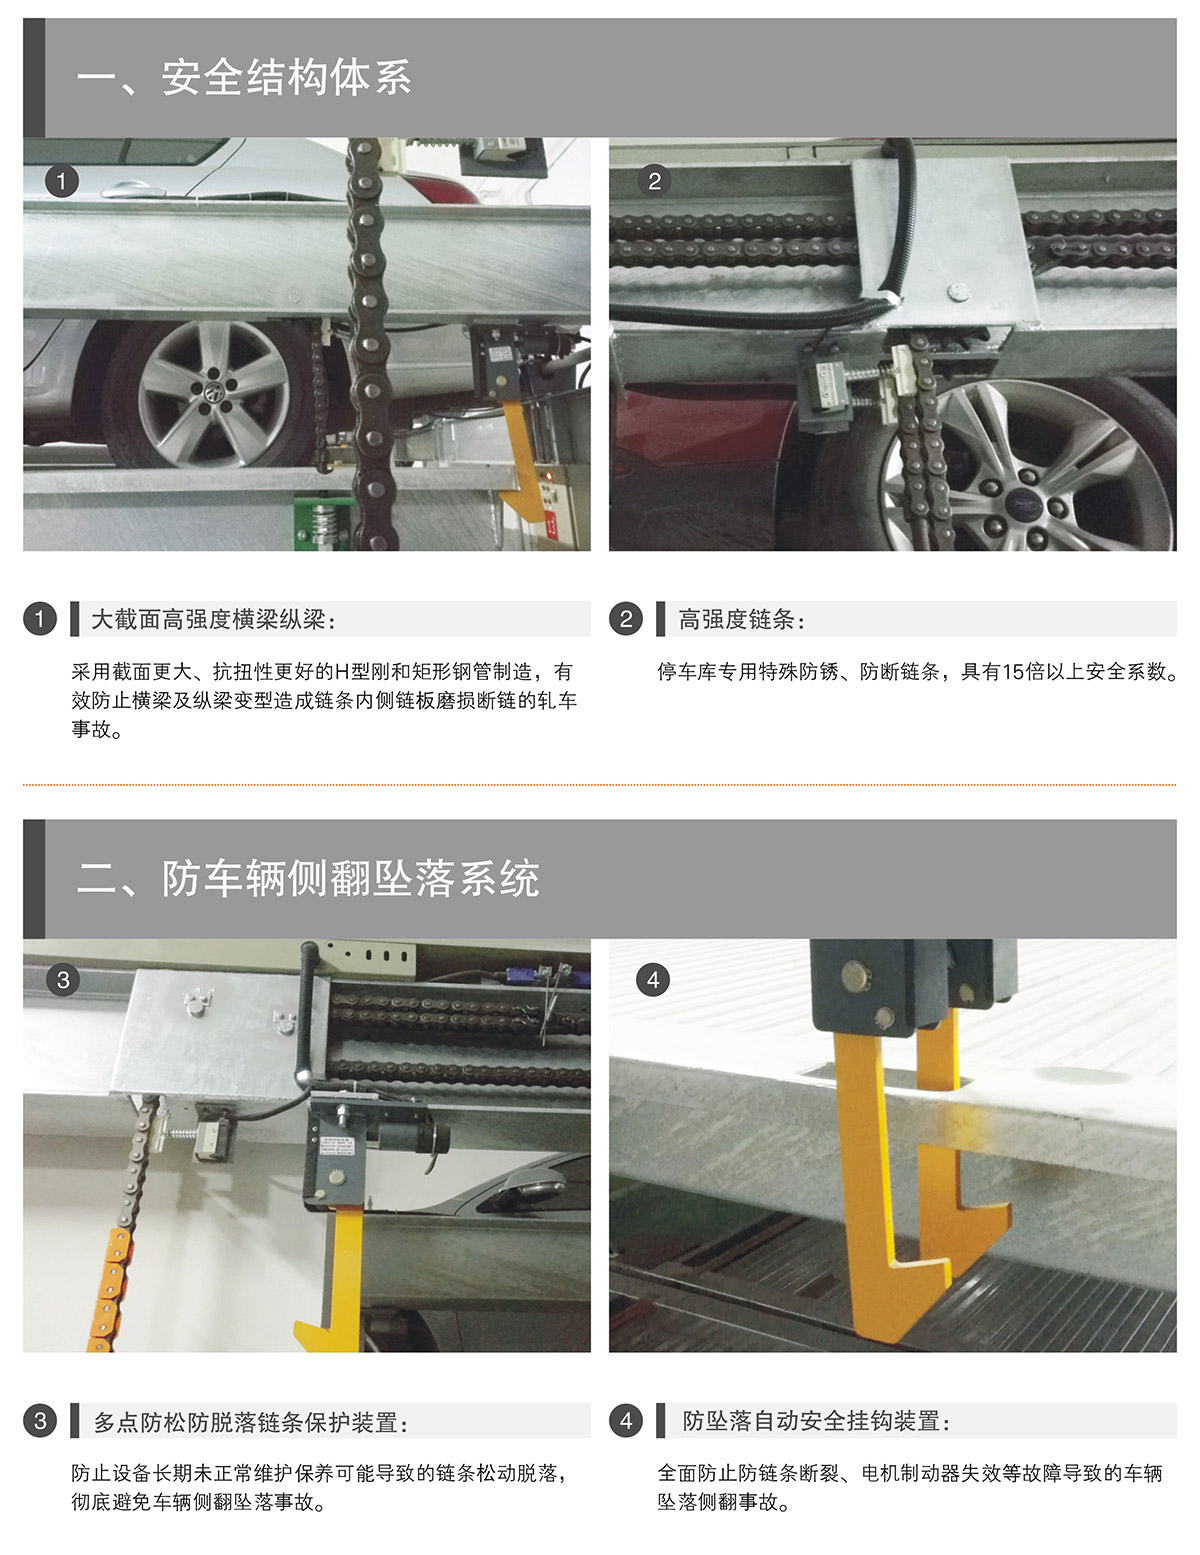 立体停车PSH升降横移机械停车设备安全结构体系.jpg